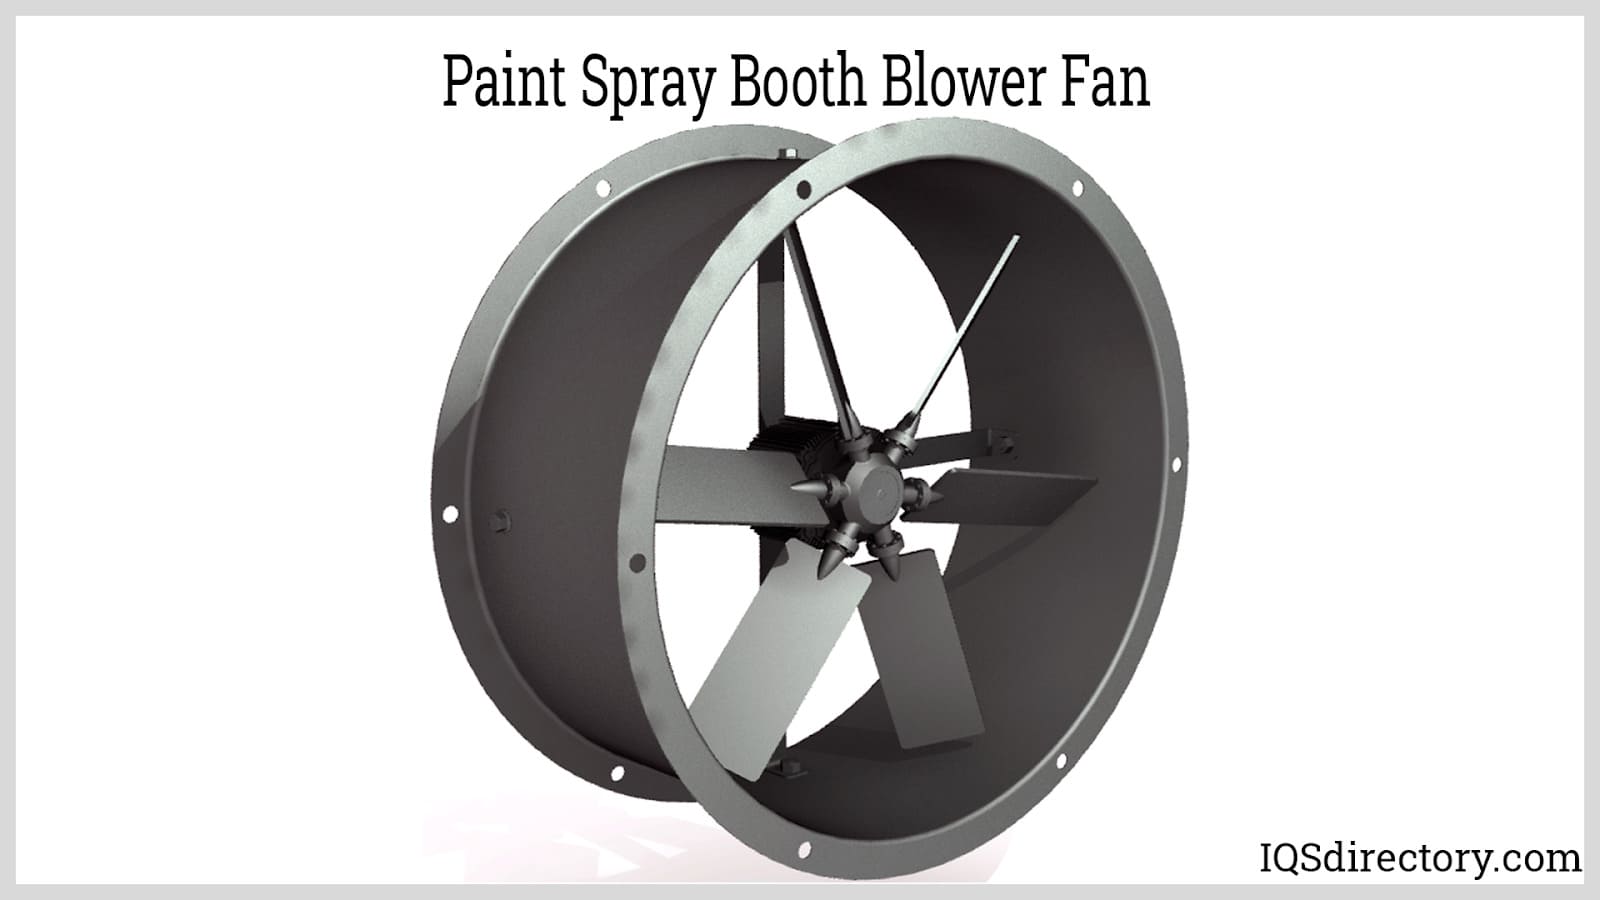 Paint Spray Booth Blower Fan